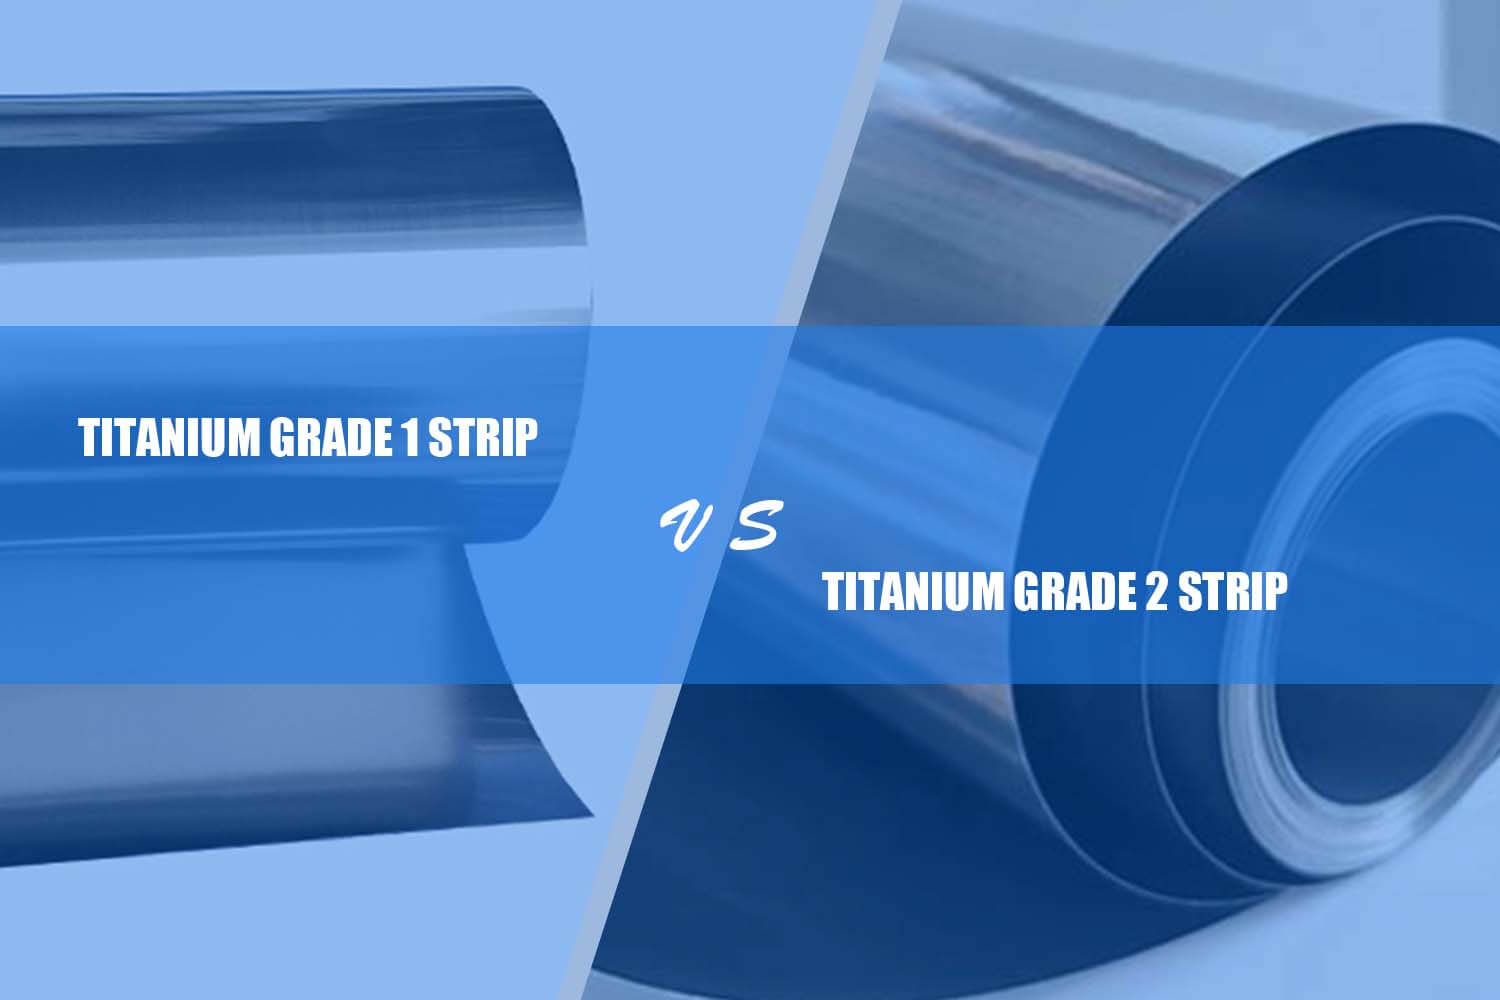 titanium grade 1 strip vs. titanium grade 2 strip